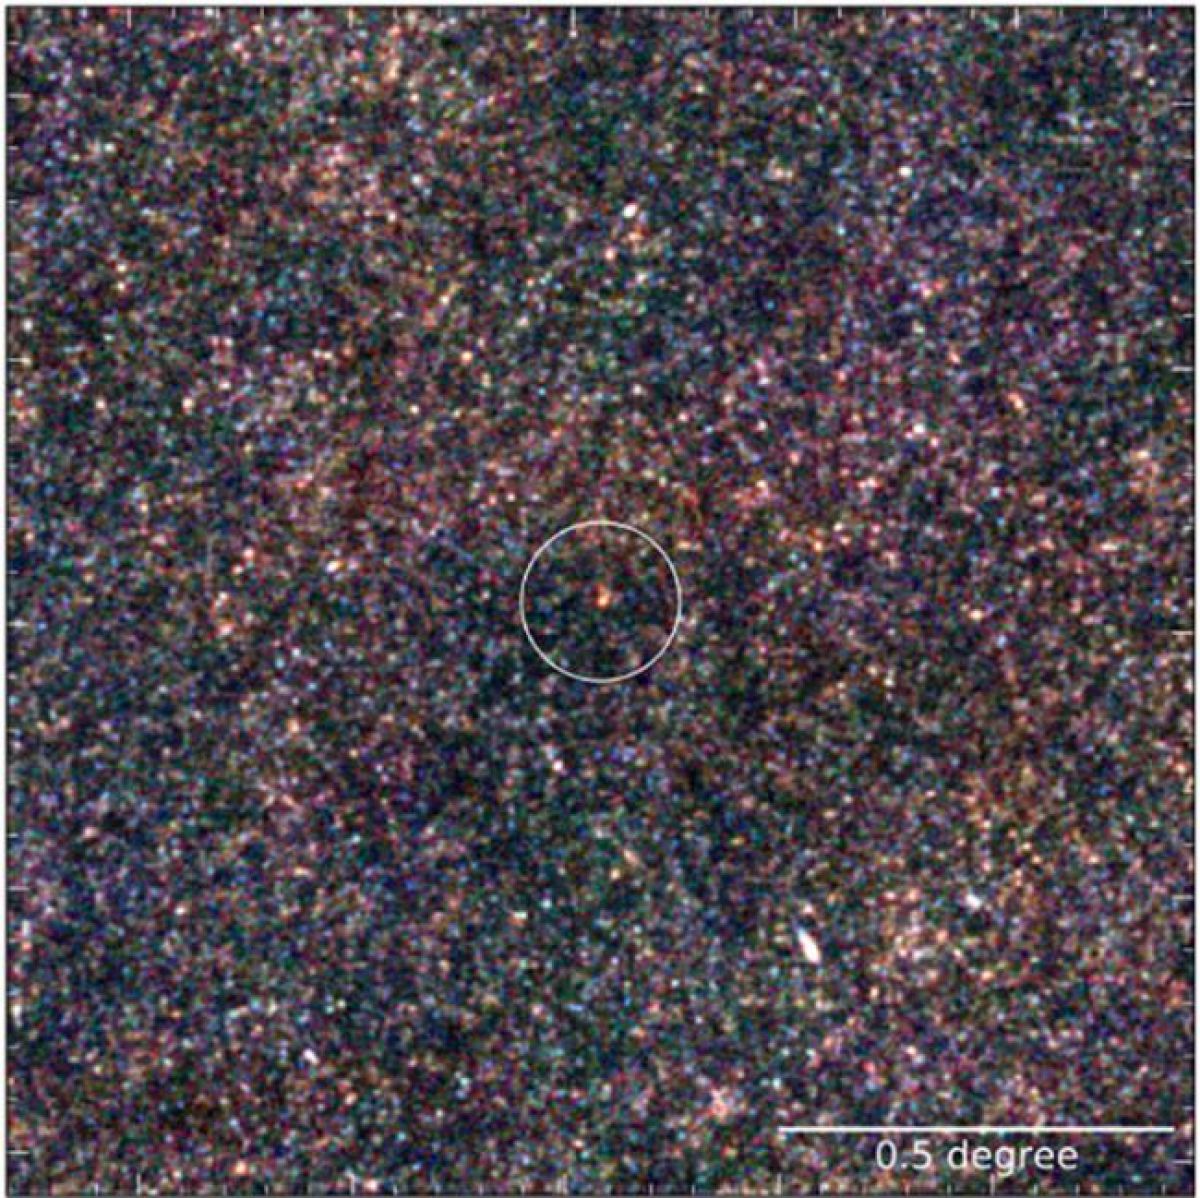 Массивный галактический суперкластер в ранней Вселенной - фото